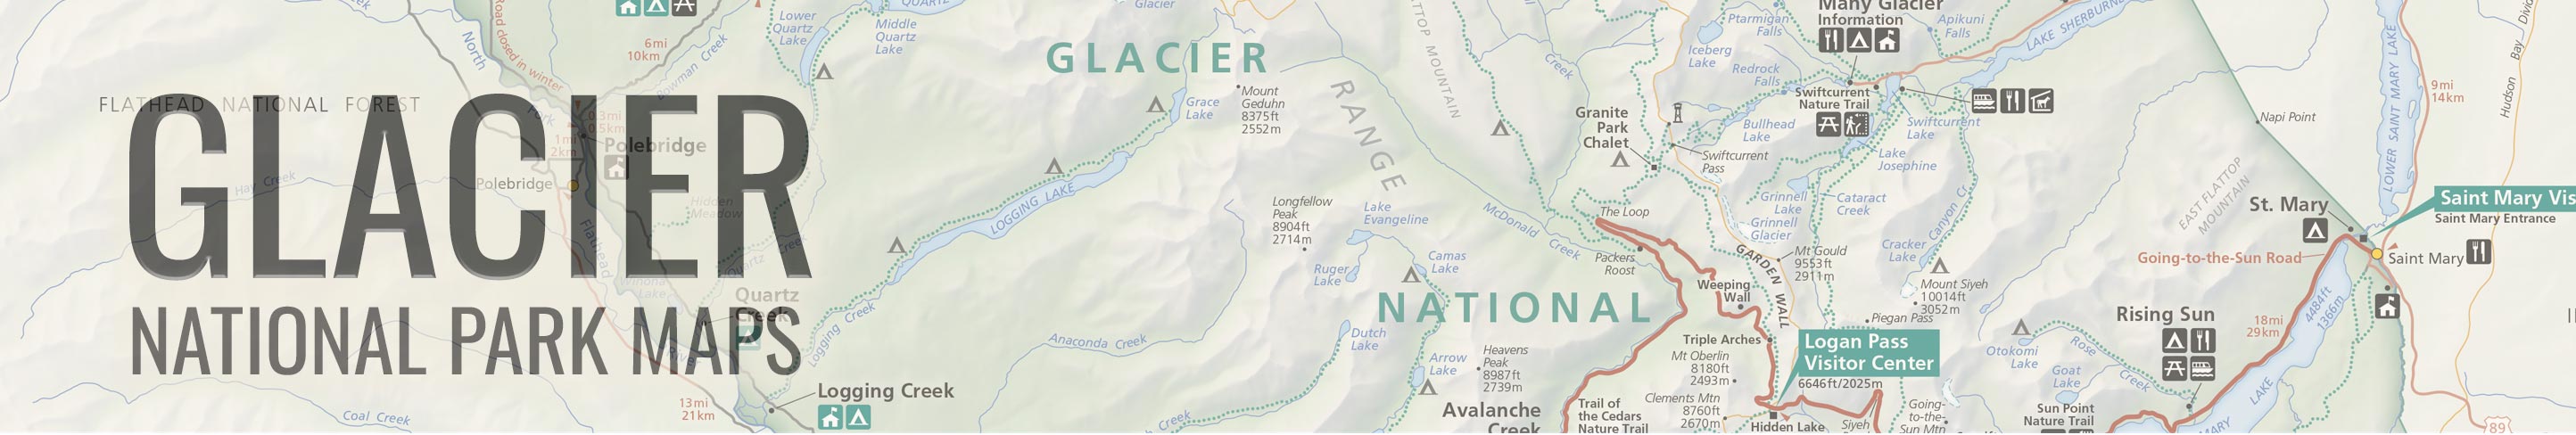 glacier-national-park-maps-header